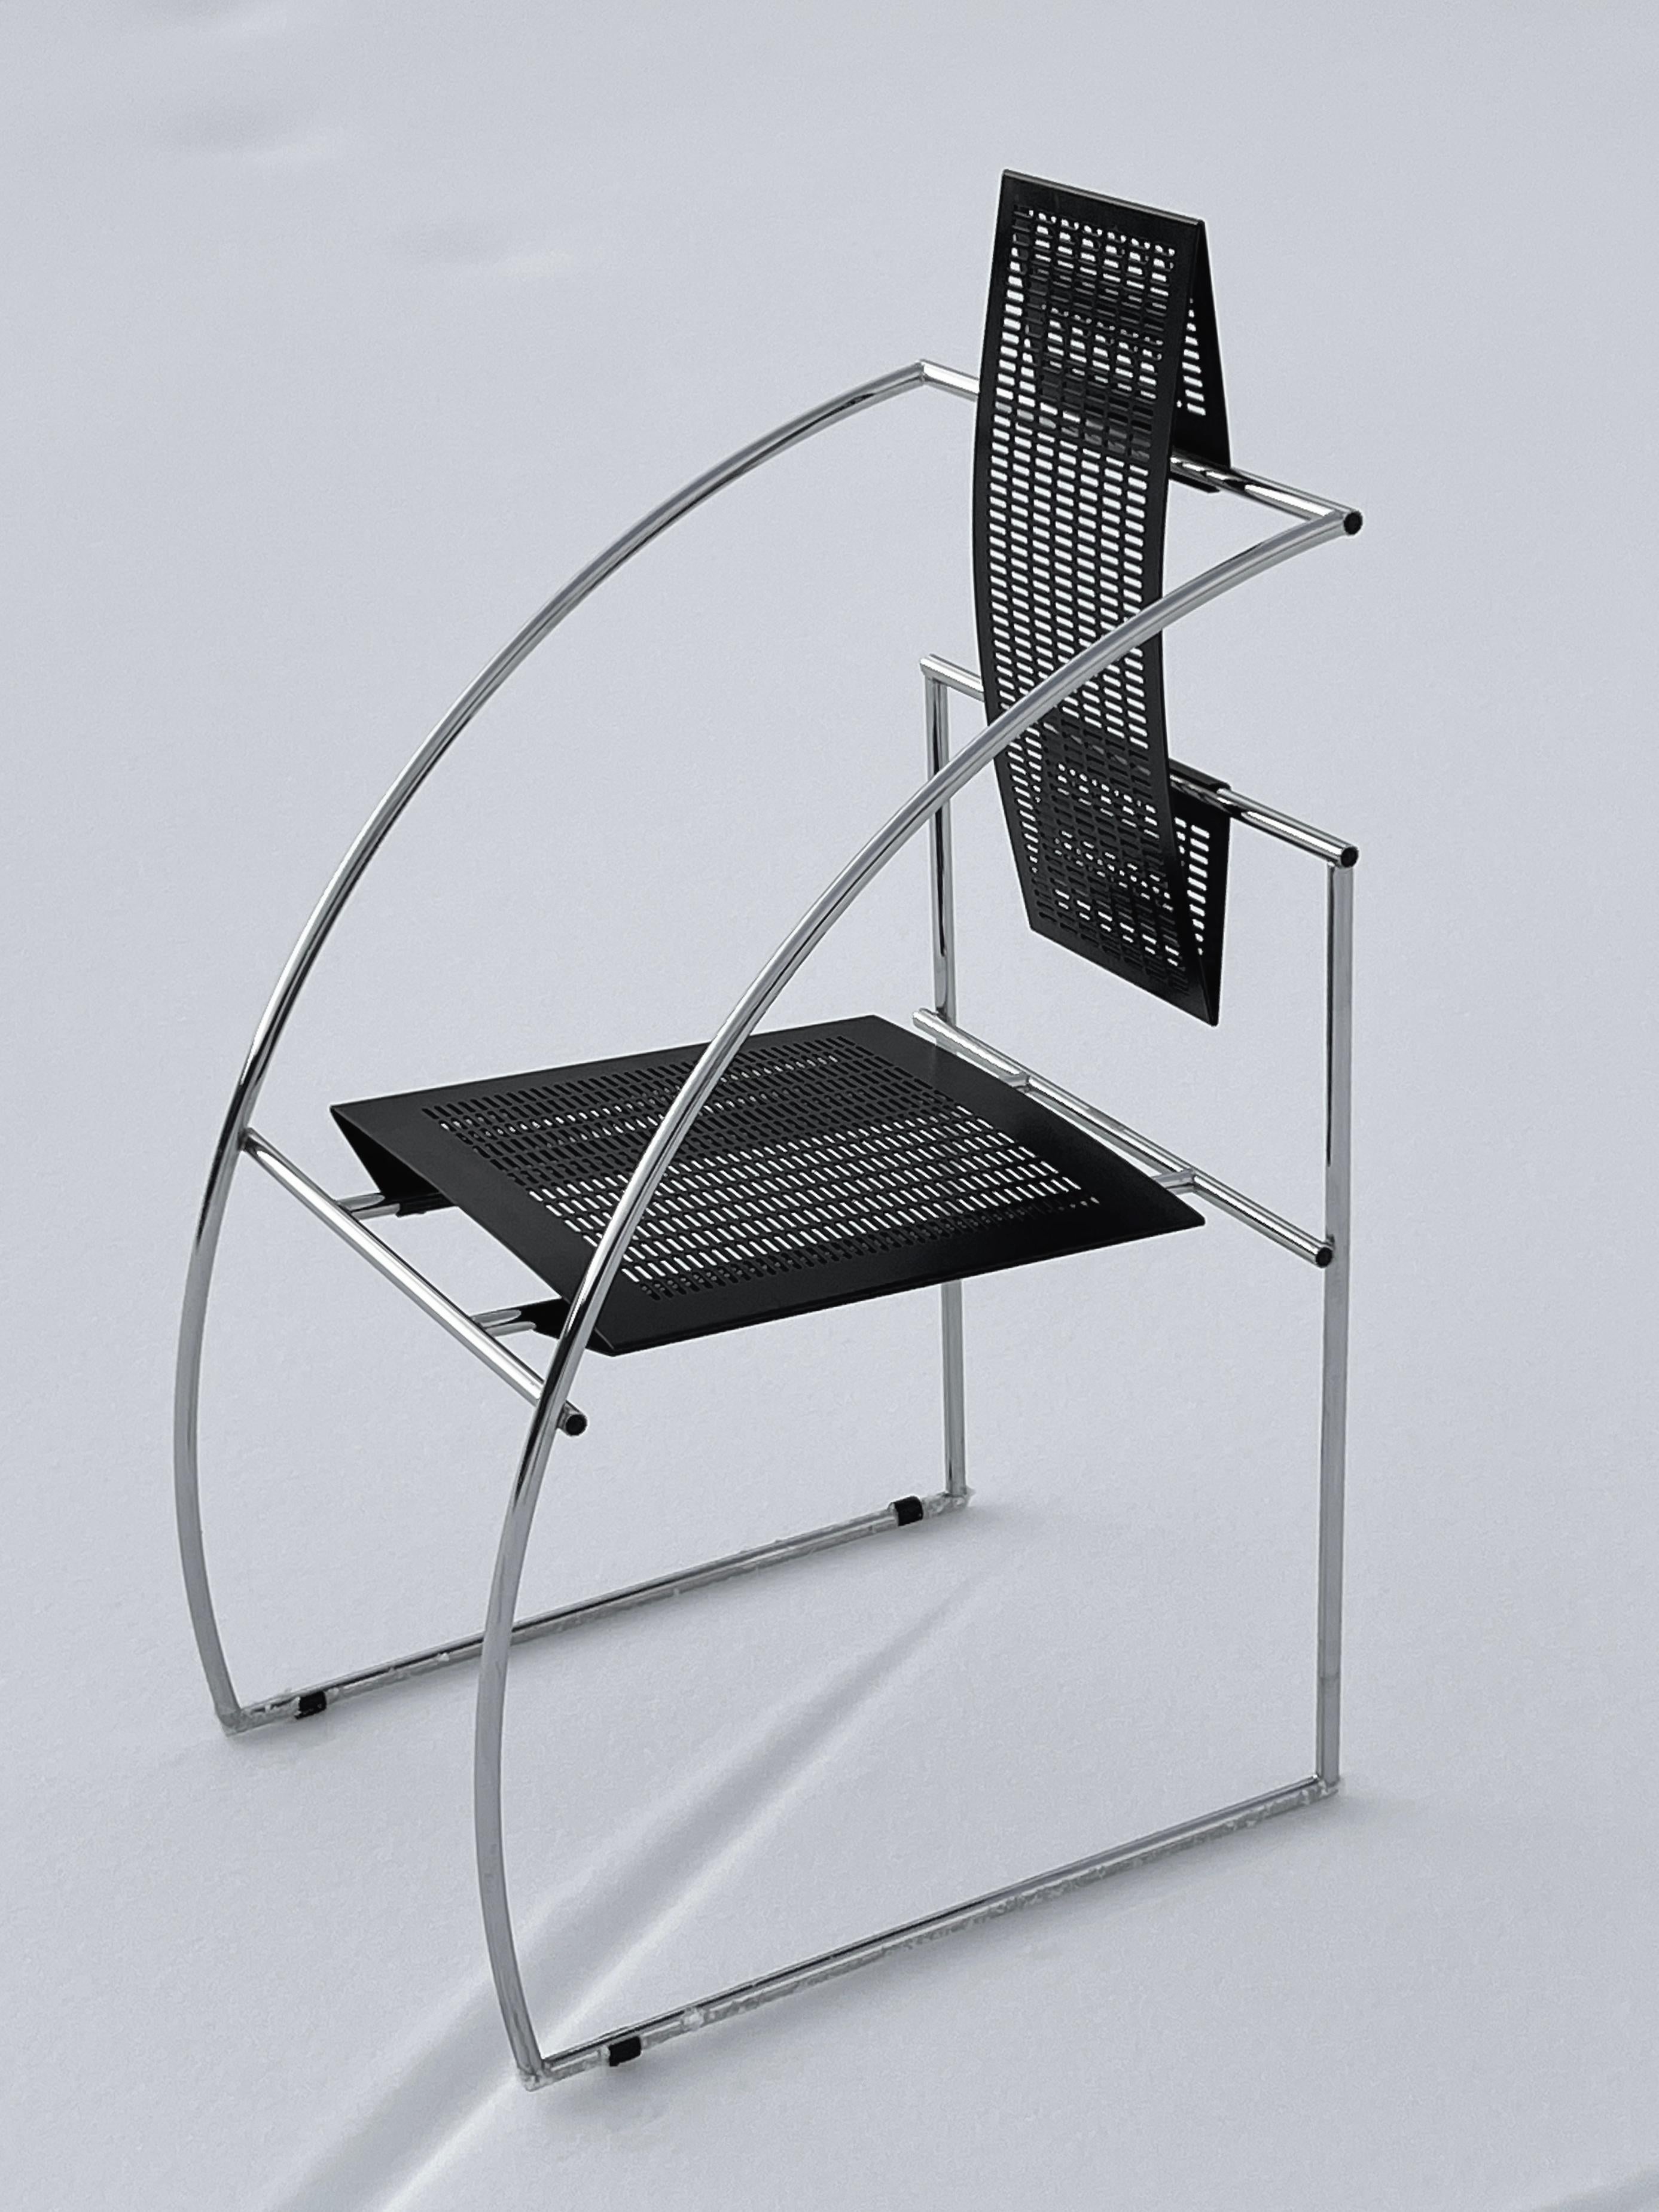 Quinta, une chaise dont l'héritage remonte à sa création en 1985, n'est pas un siège ordinaire ; elle incarne la fusion du confort et de la sophistication architecturale. Conçue sous l'influence de grands noms de l'architecture tels que Le